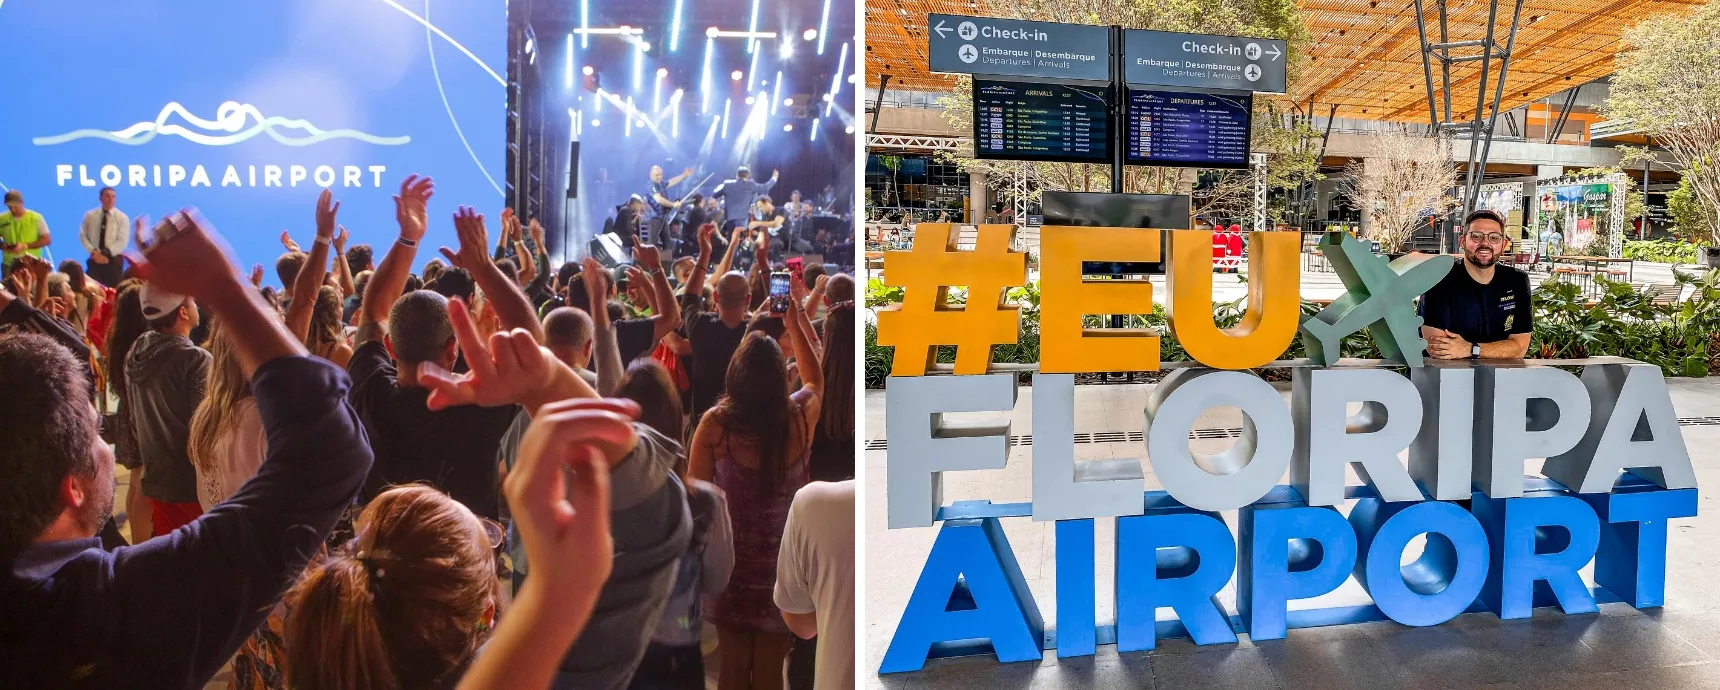 Floripa Flughafen feiert Jubiläum mit Sonderführung und kostenloser Show